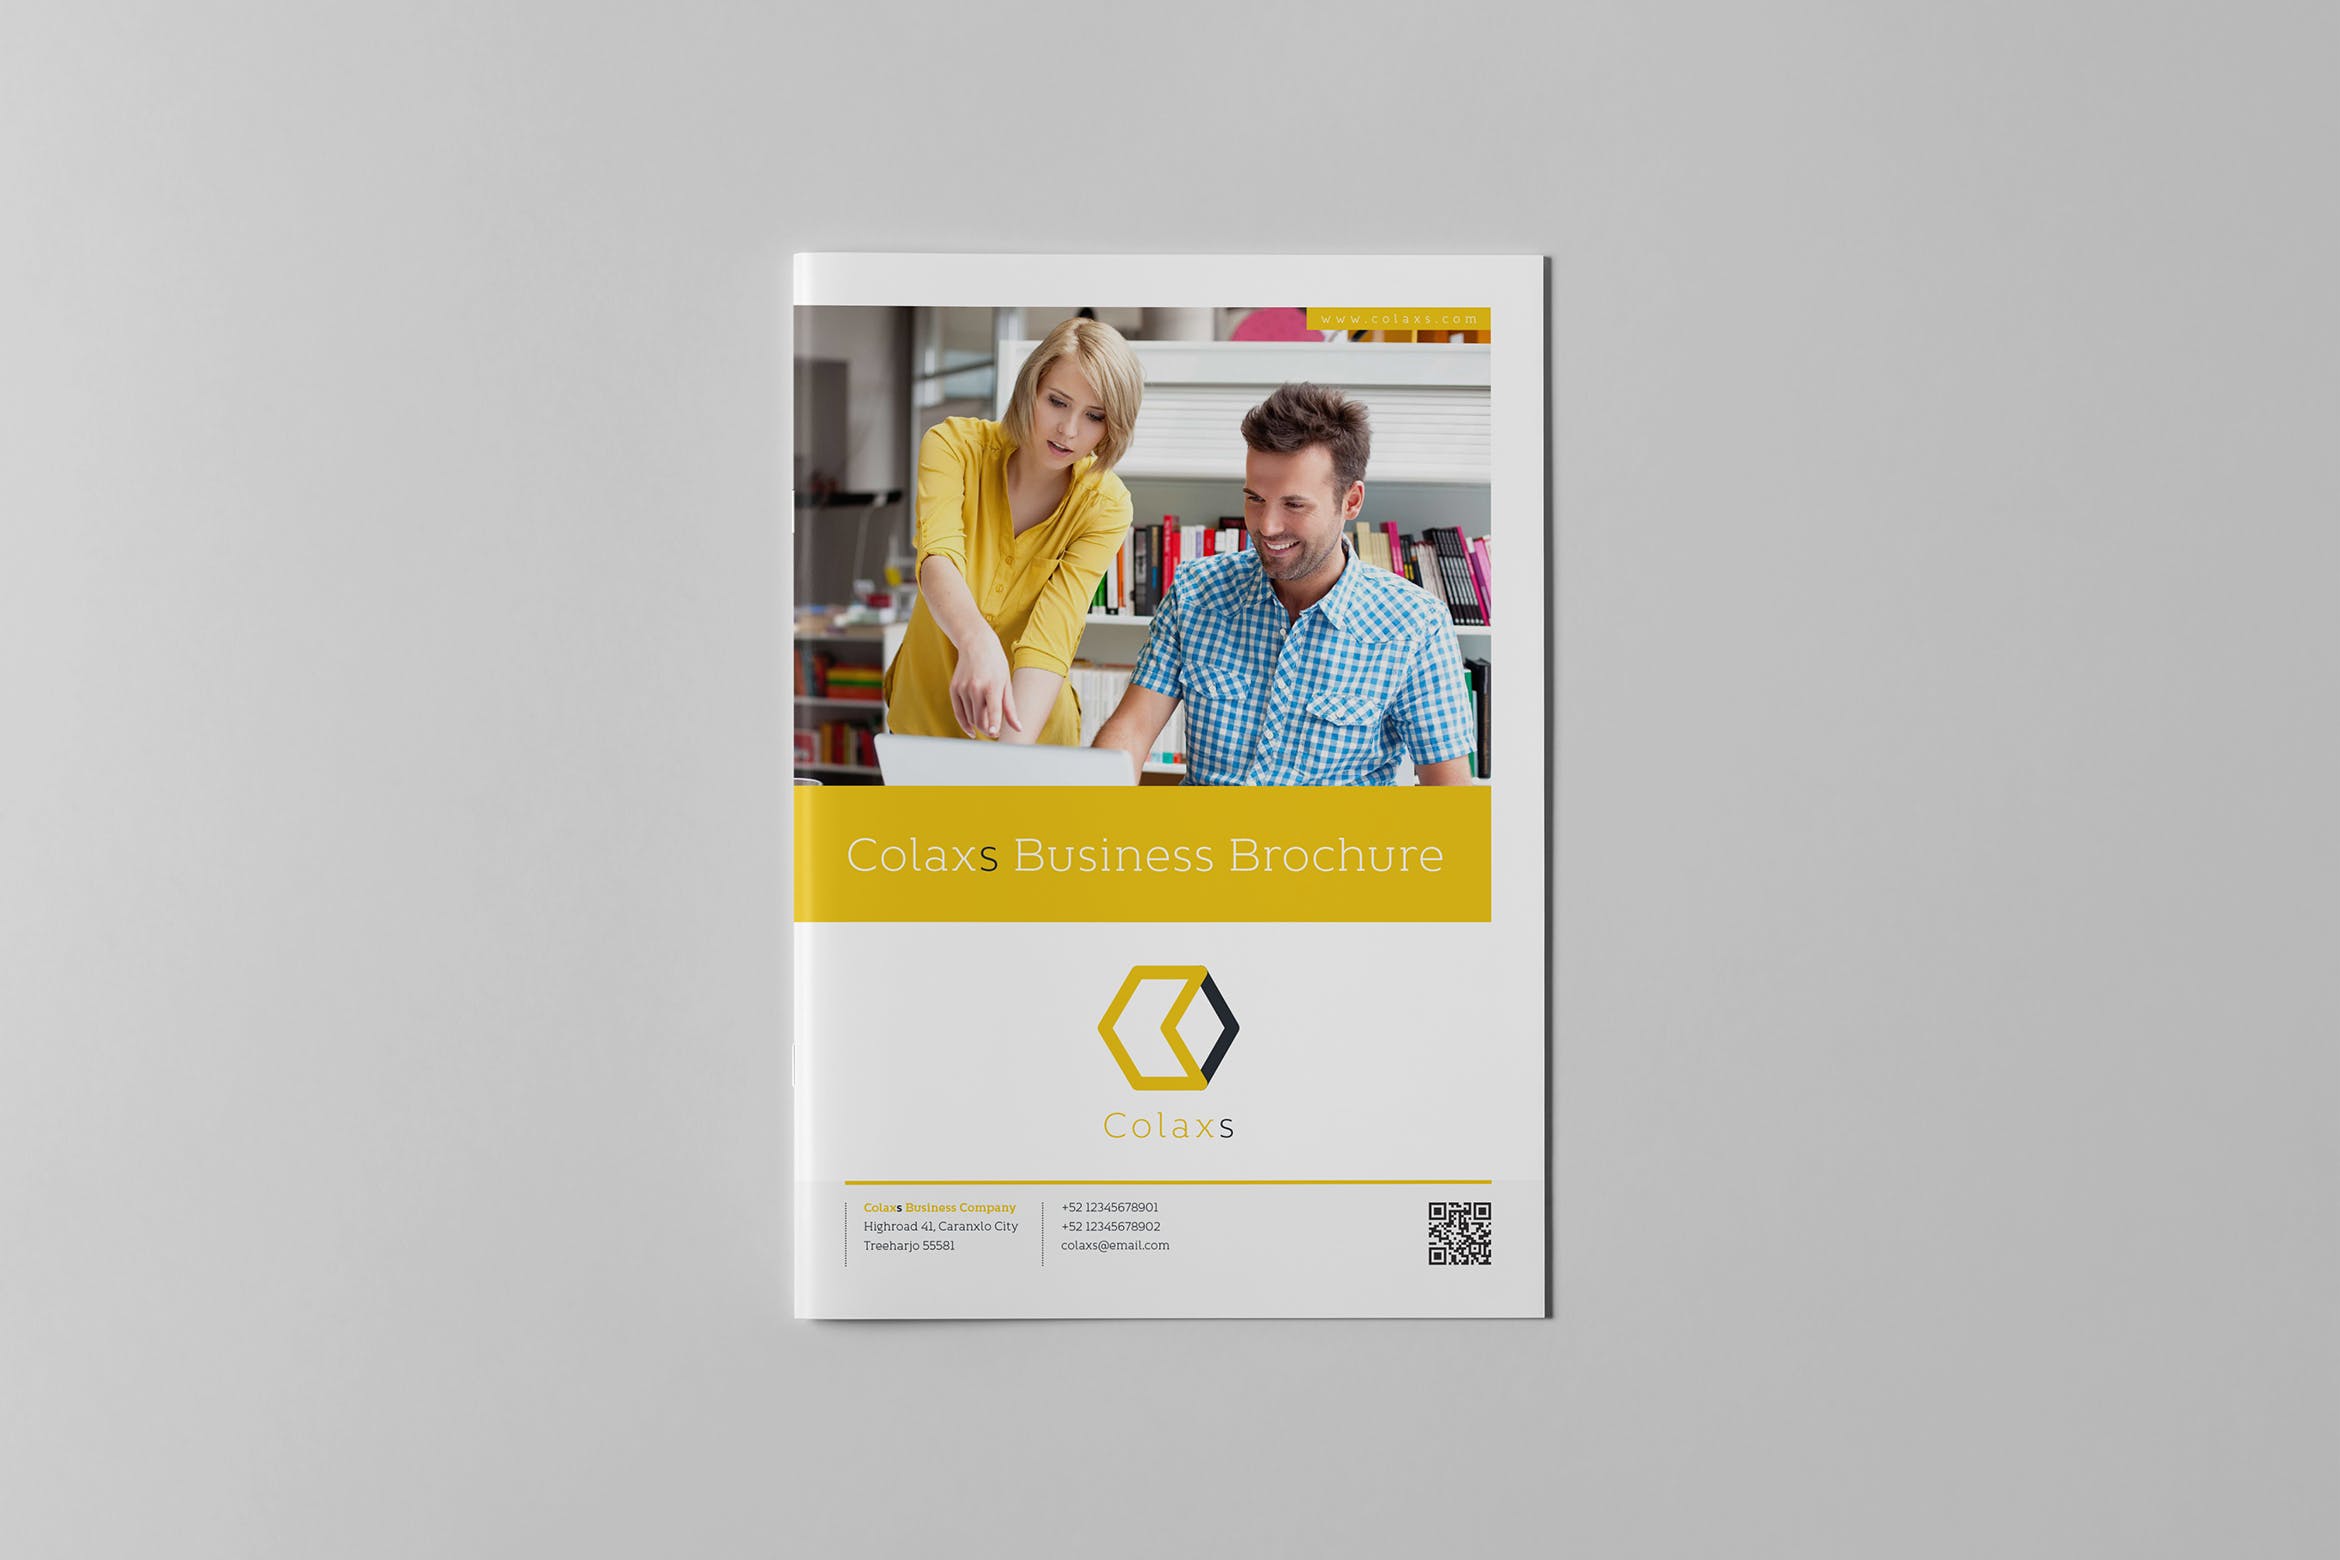 商业手册/企业品牌画册设计模板素材 Colaxs Business Brochure插图